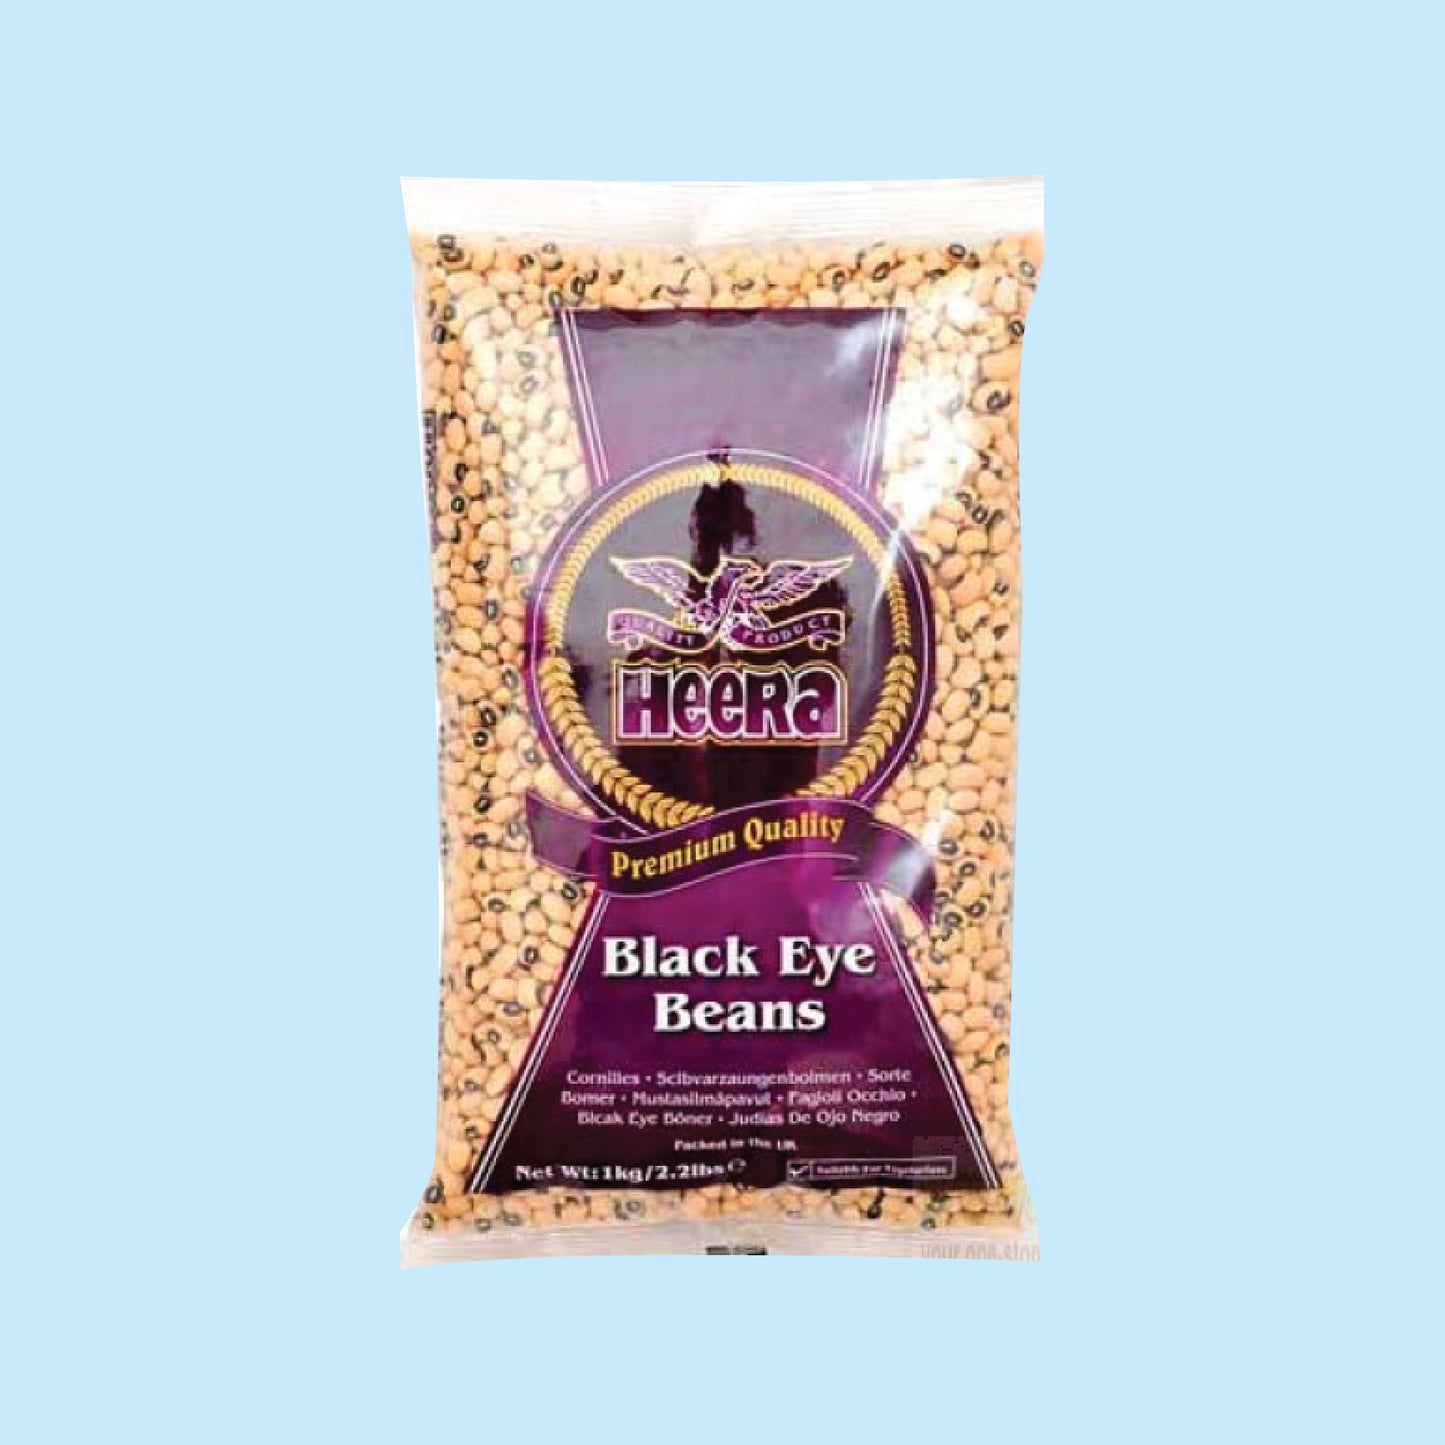 Heera black eye beans